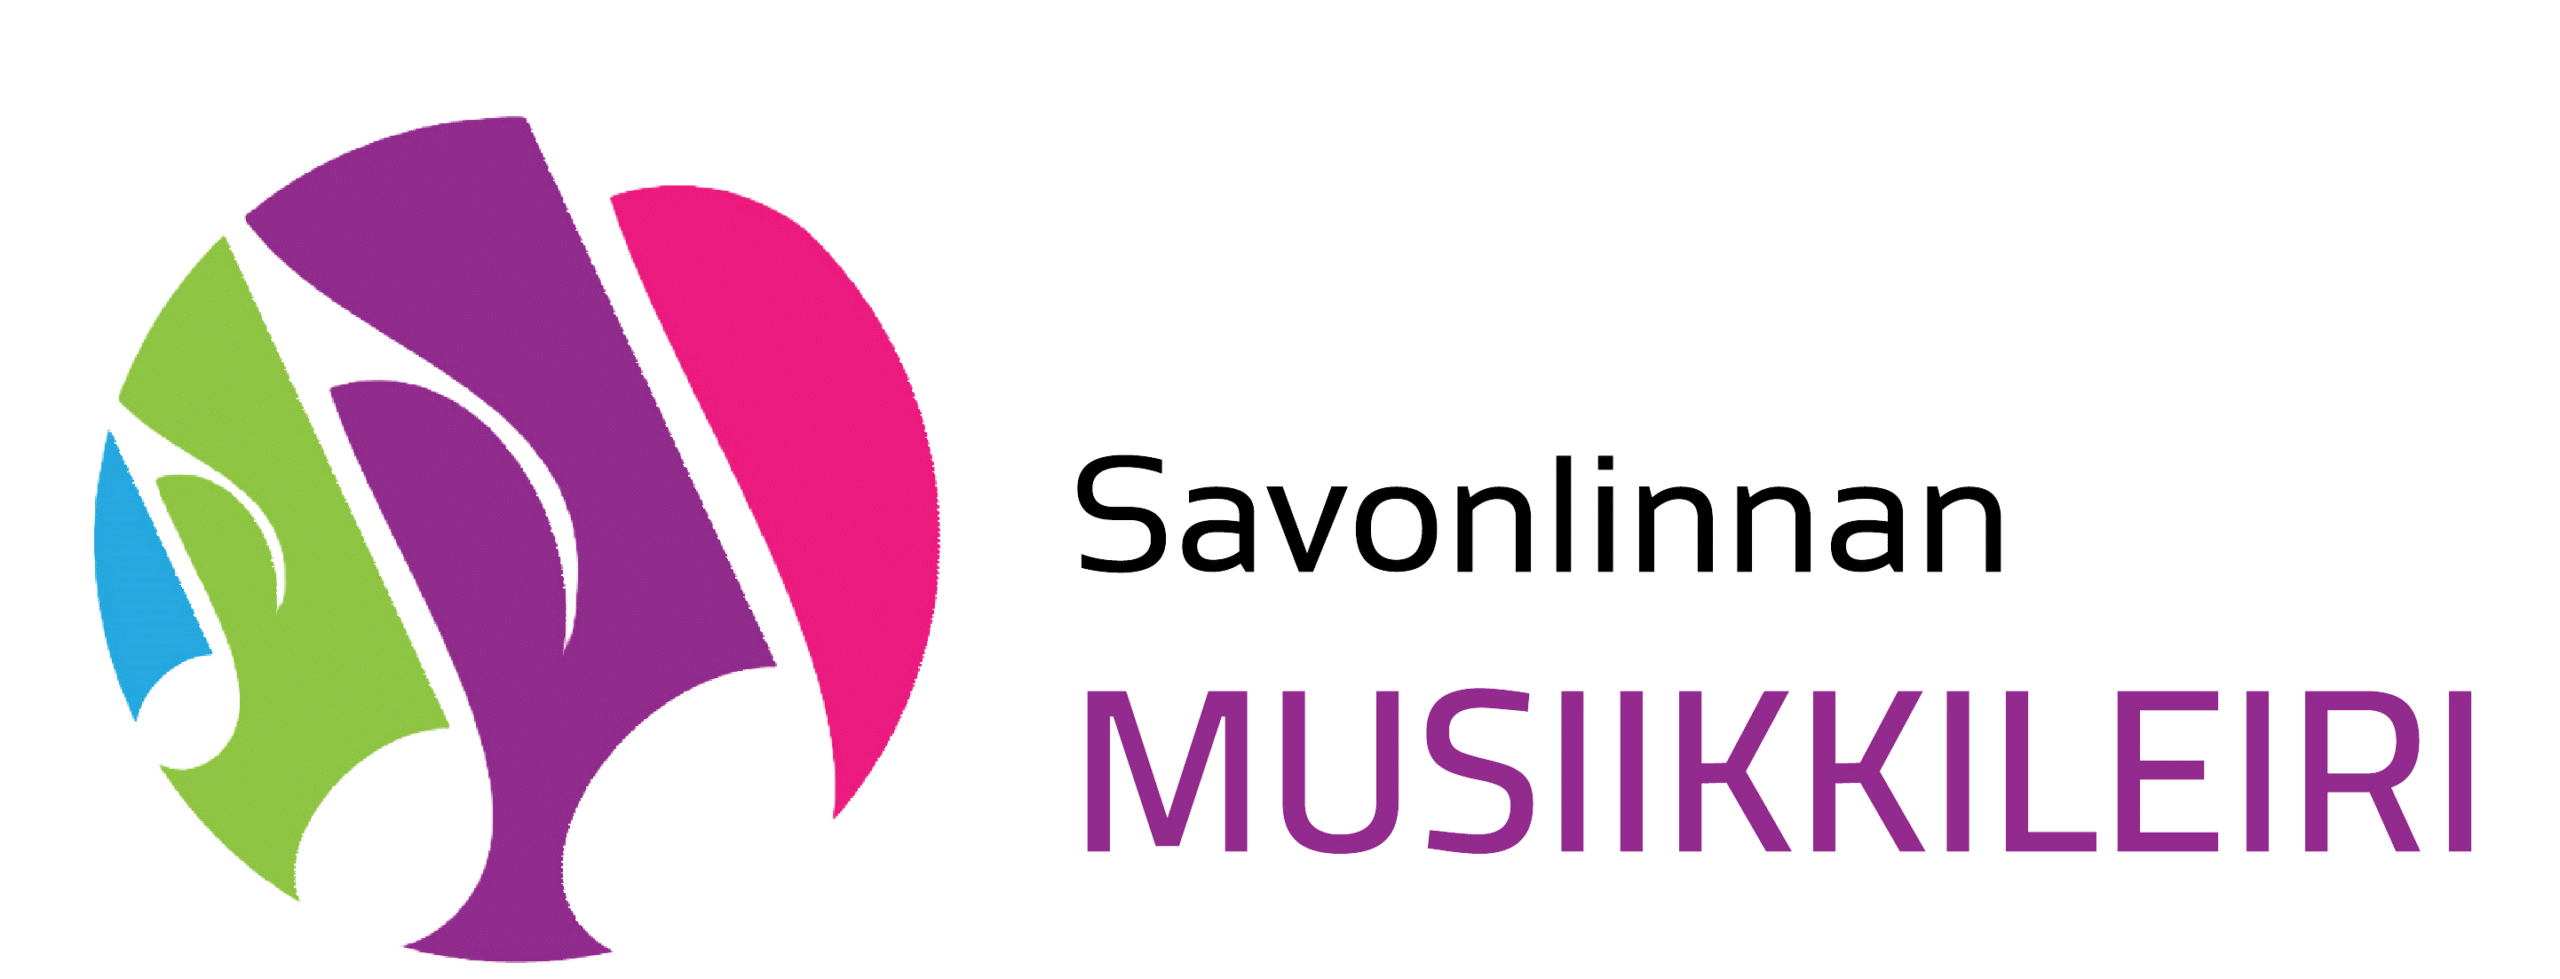 Logo, linkki Savonlinnan musiikkileiri sivulle